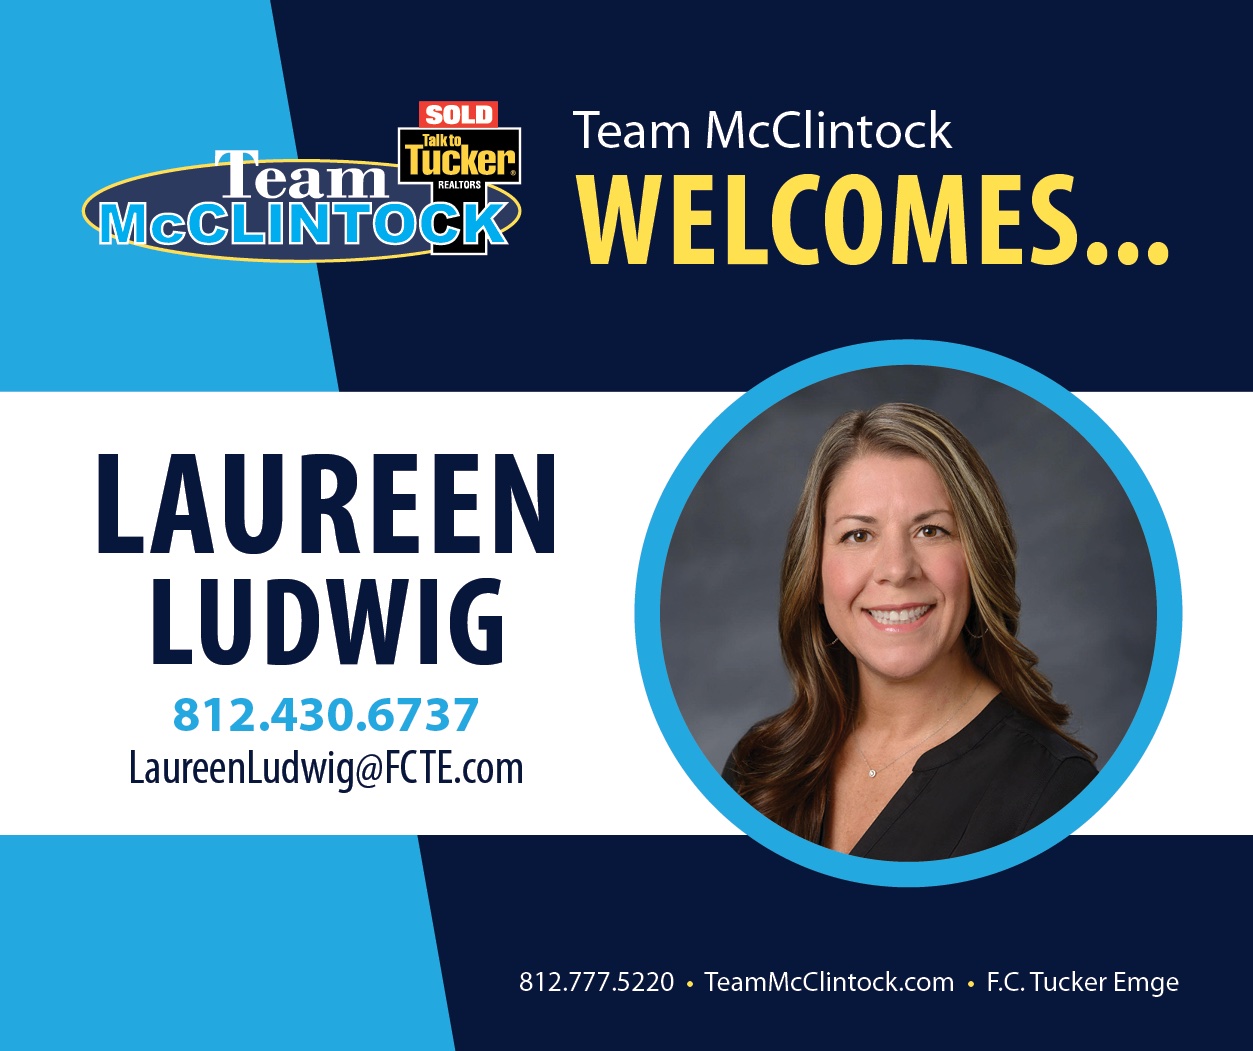 Laureen-Ludwig-Welcome